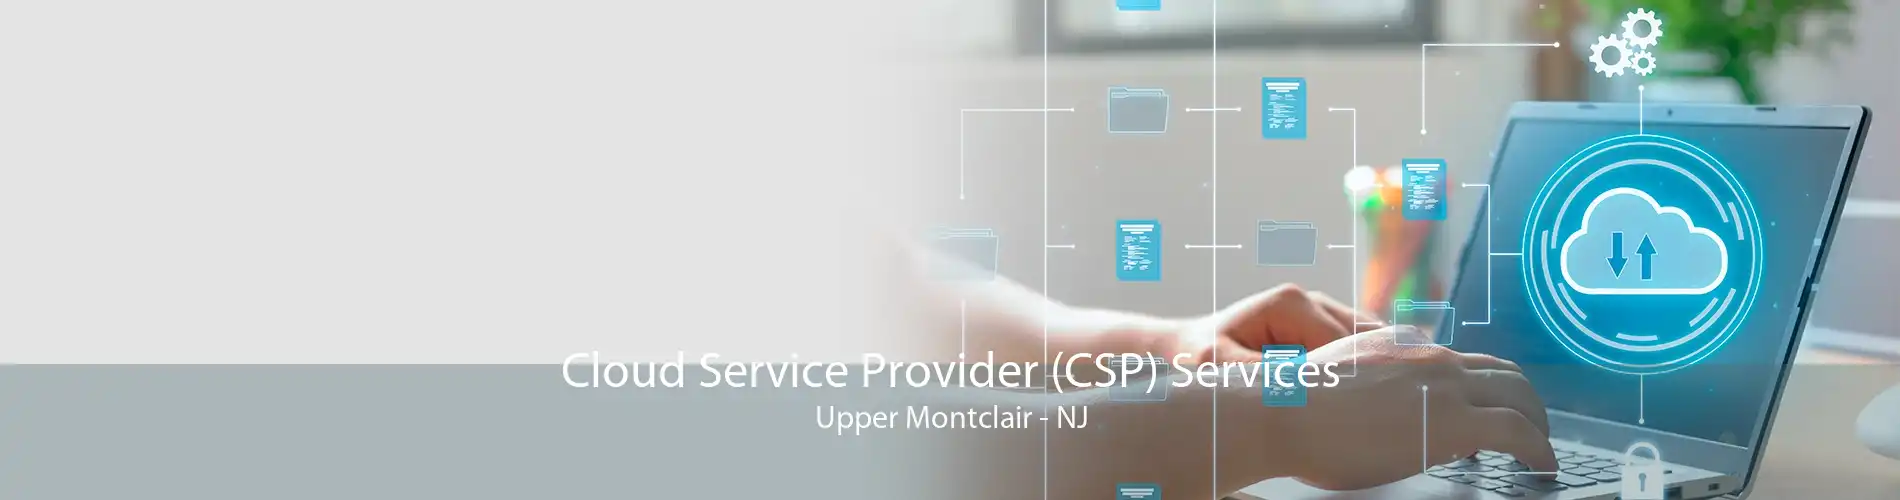 Cloud Service Provider (CSP) Services Upper Montclair - NJ